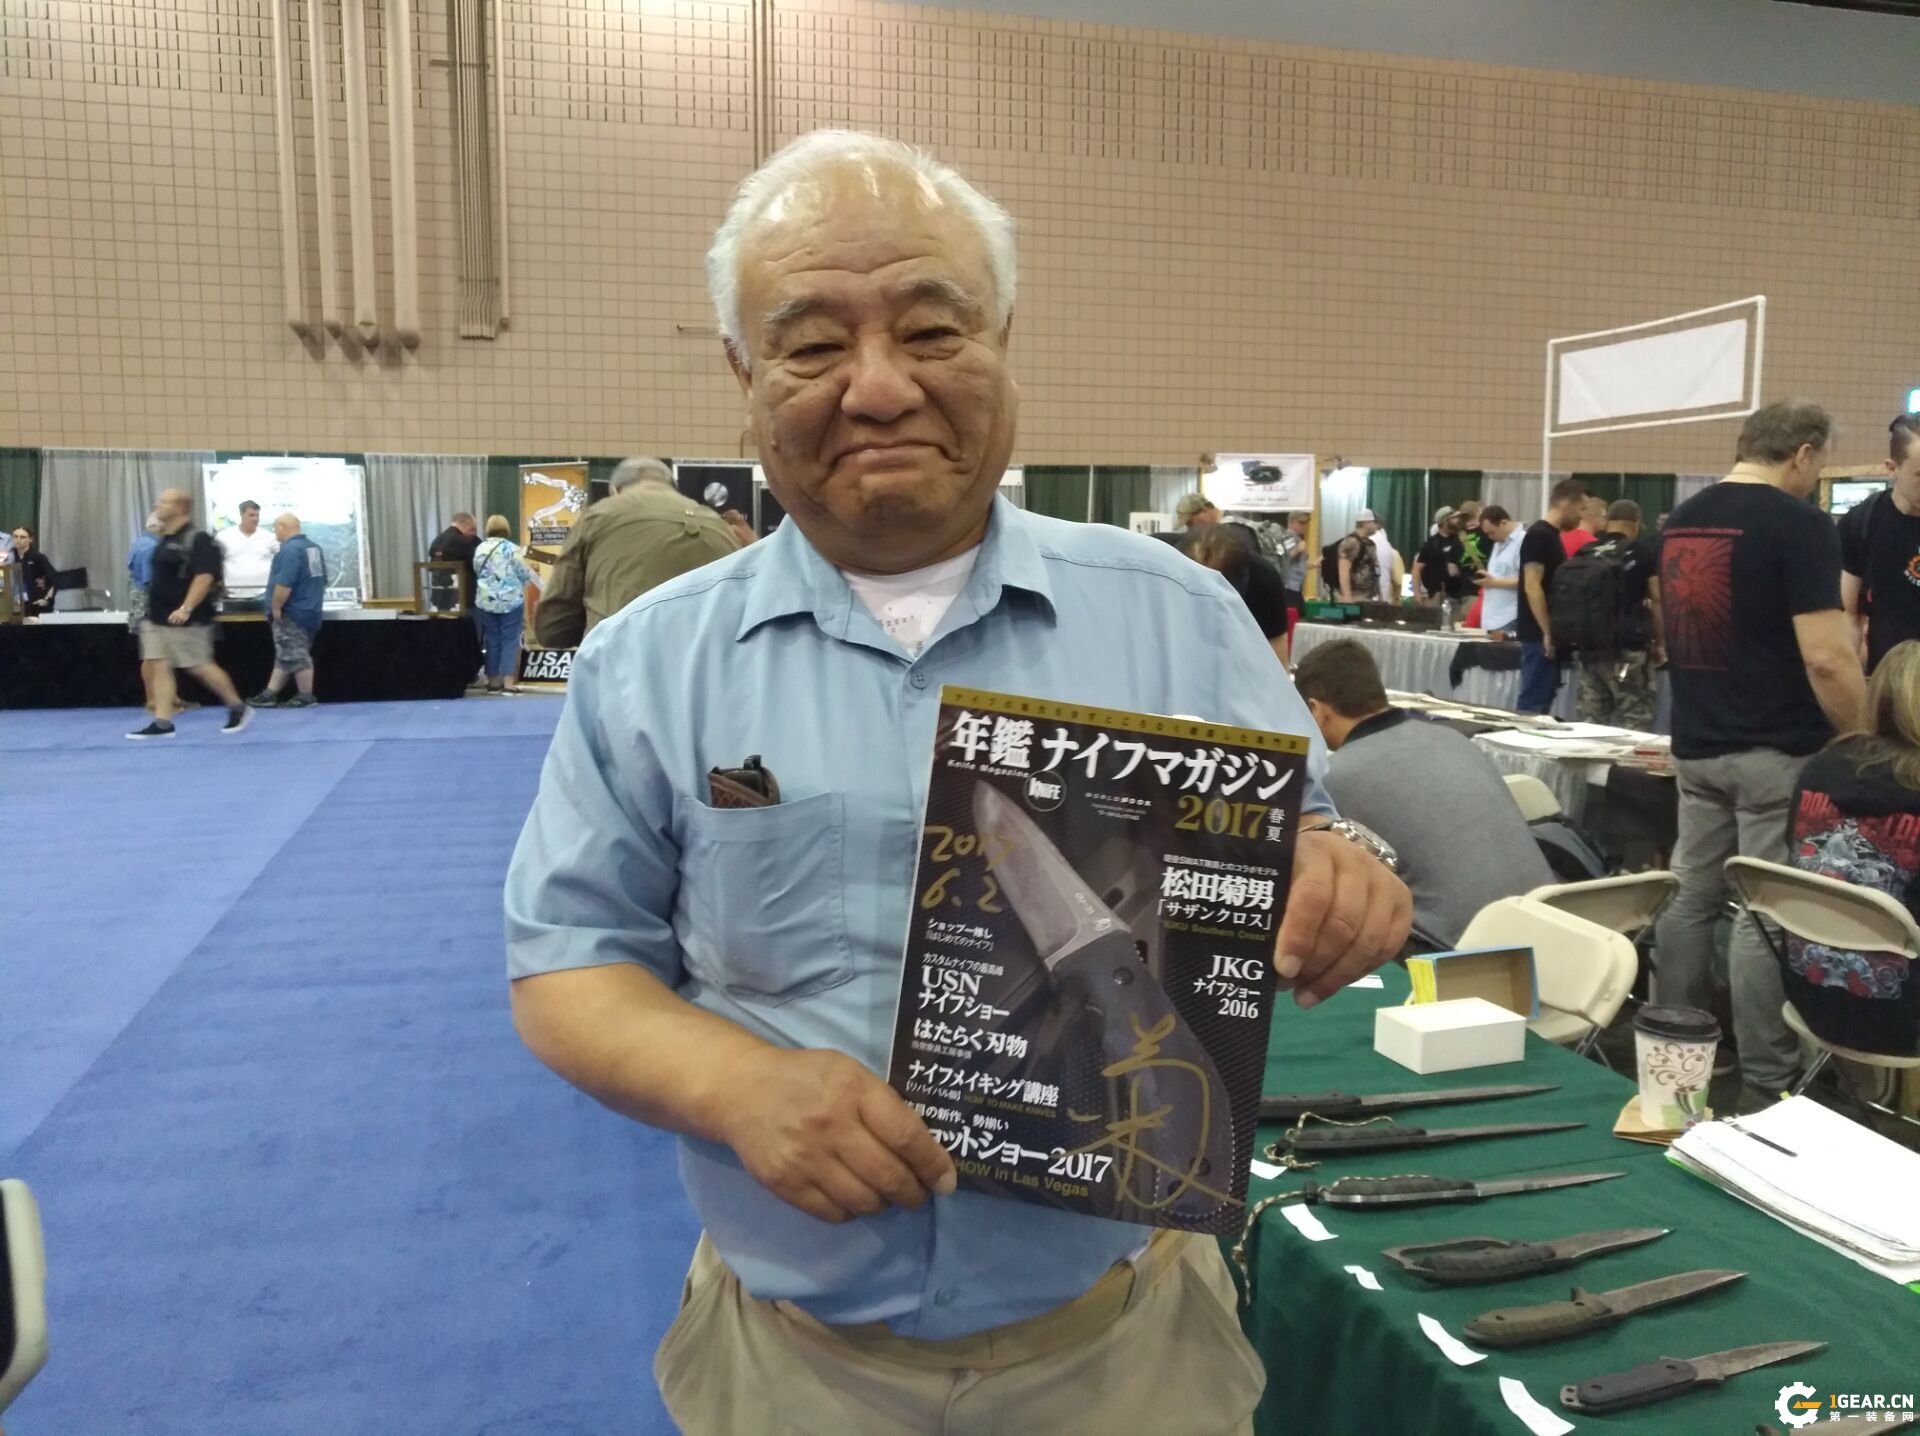 松田菊男老师最爱用的钢材是什么？ 